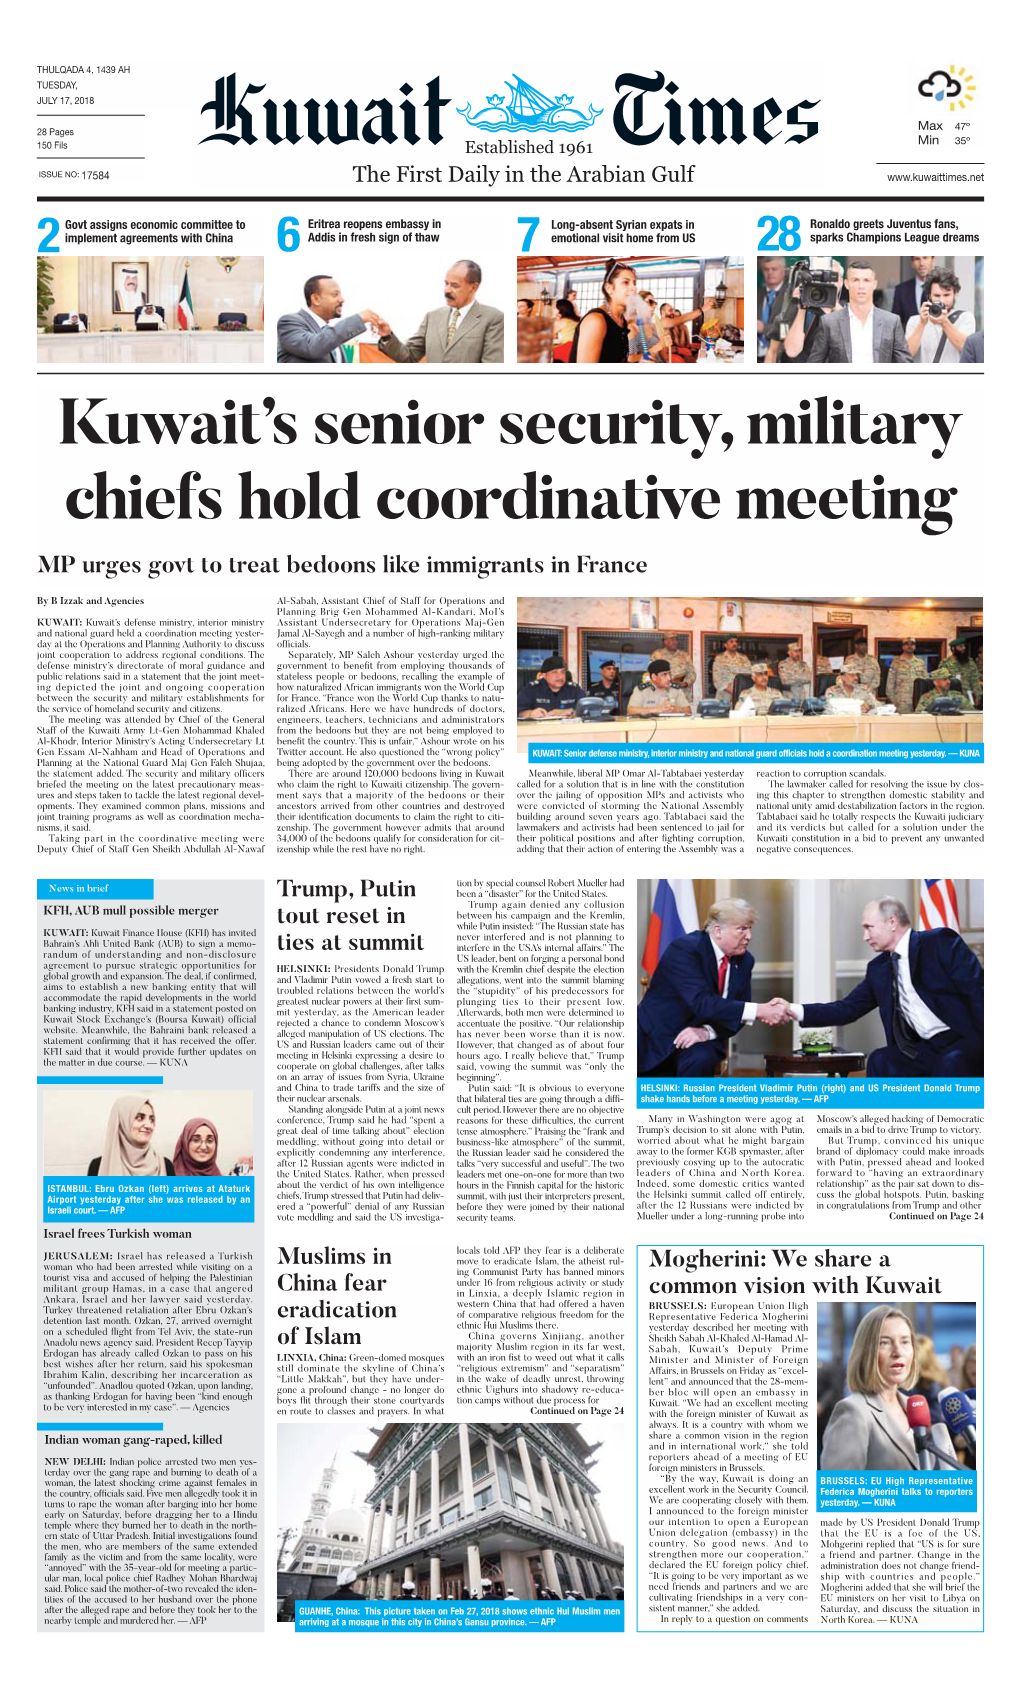 Kuwaittimes 17-7-2018.Qxp Layout 1